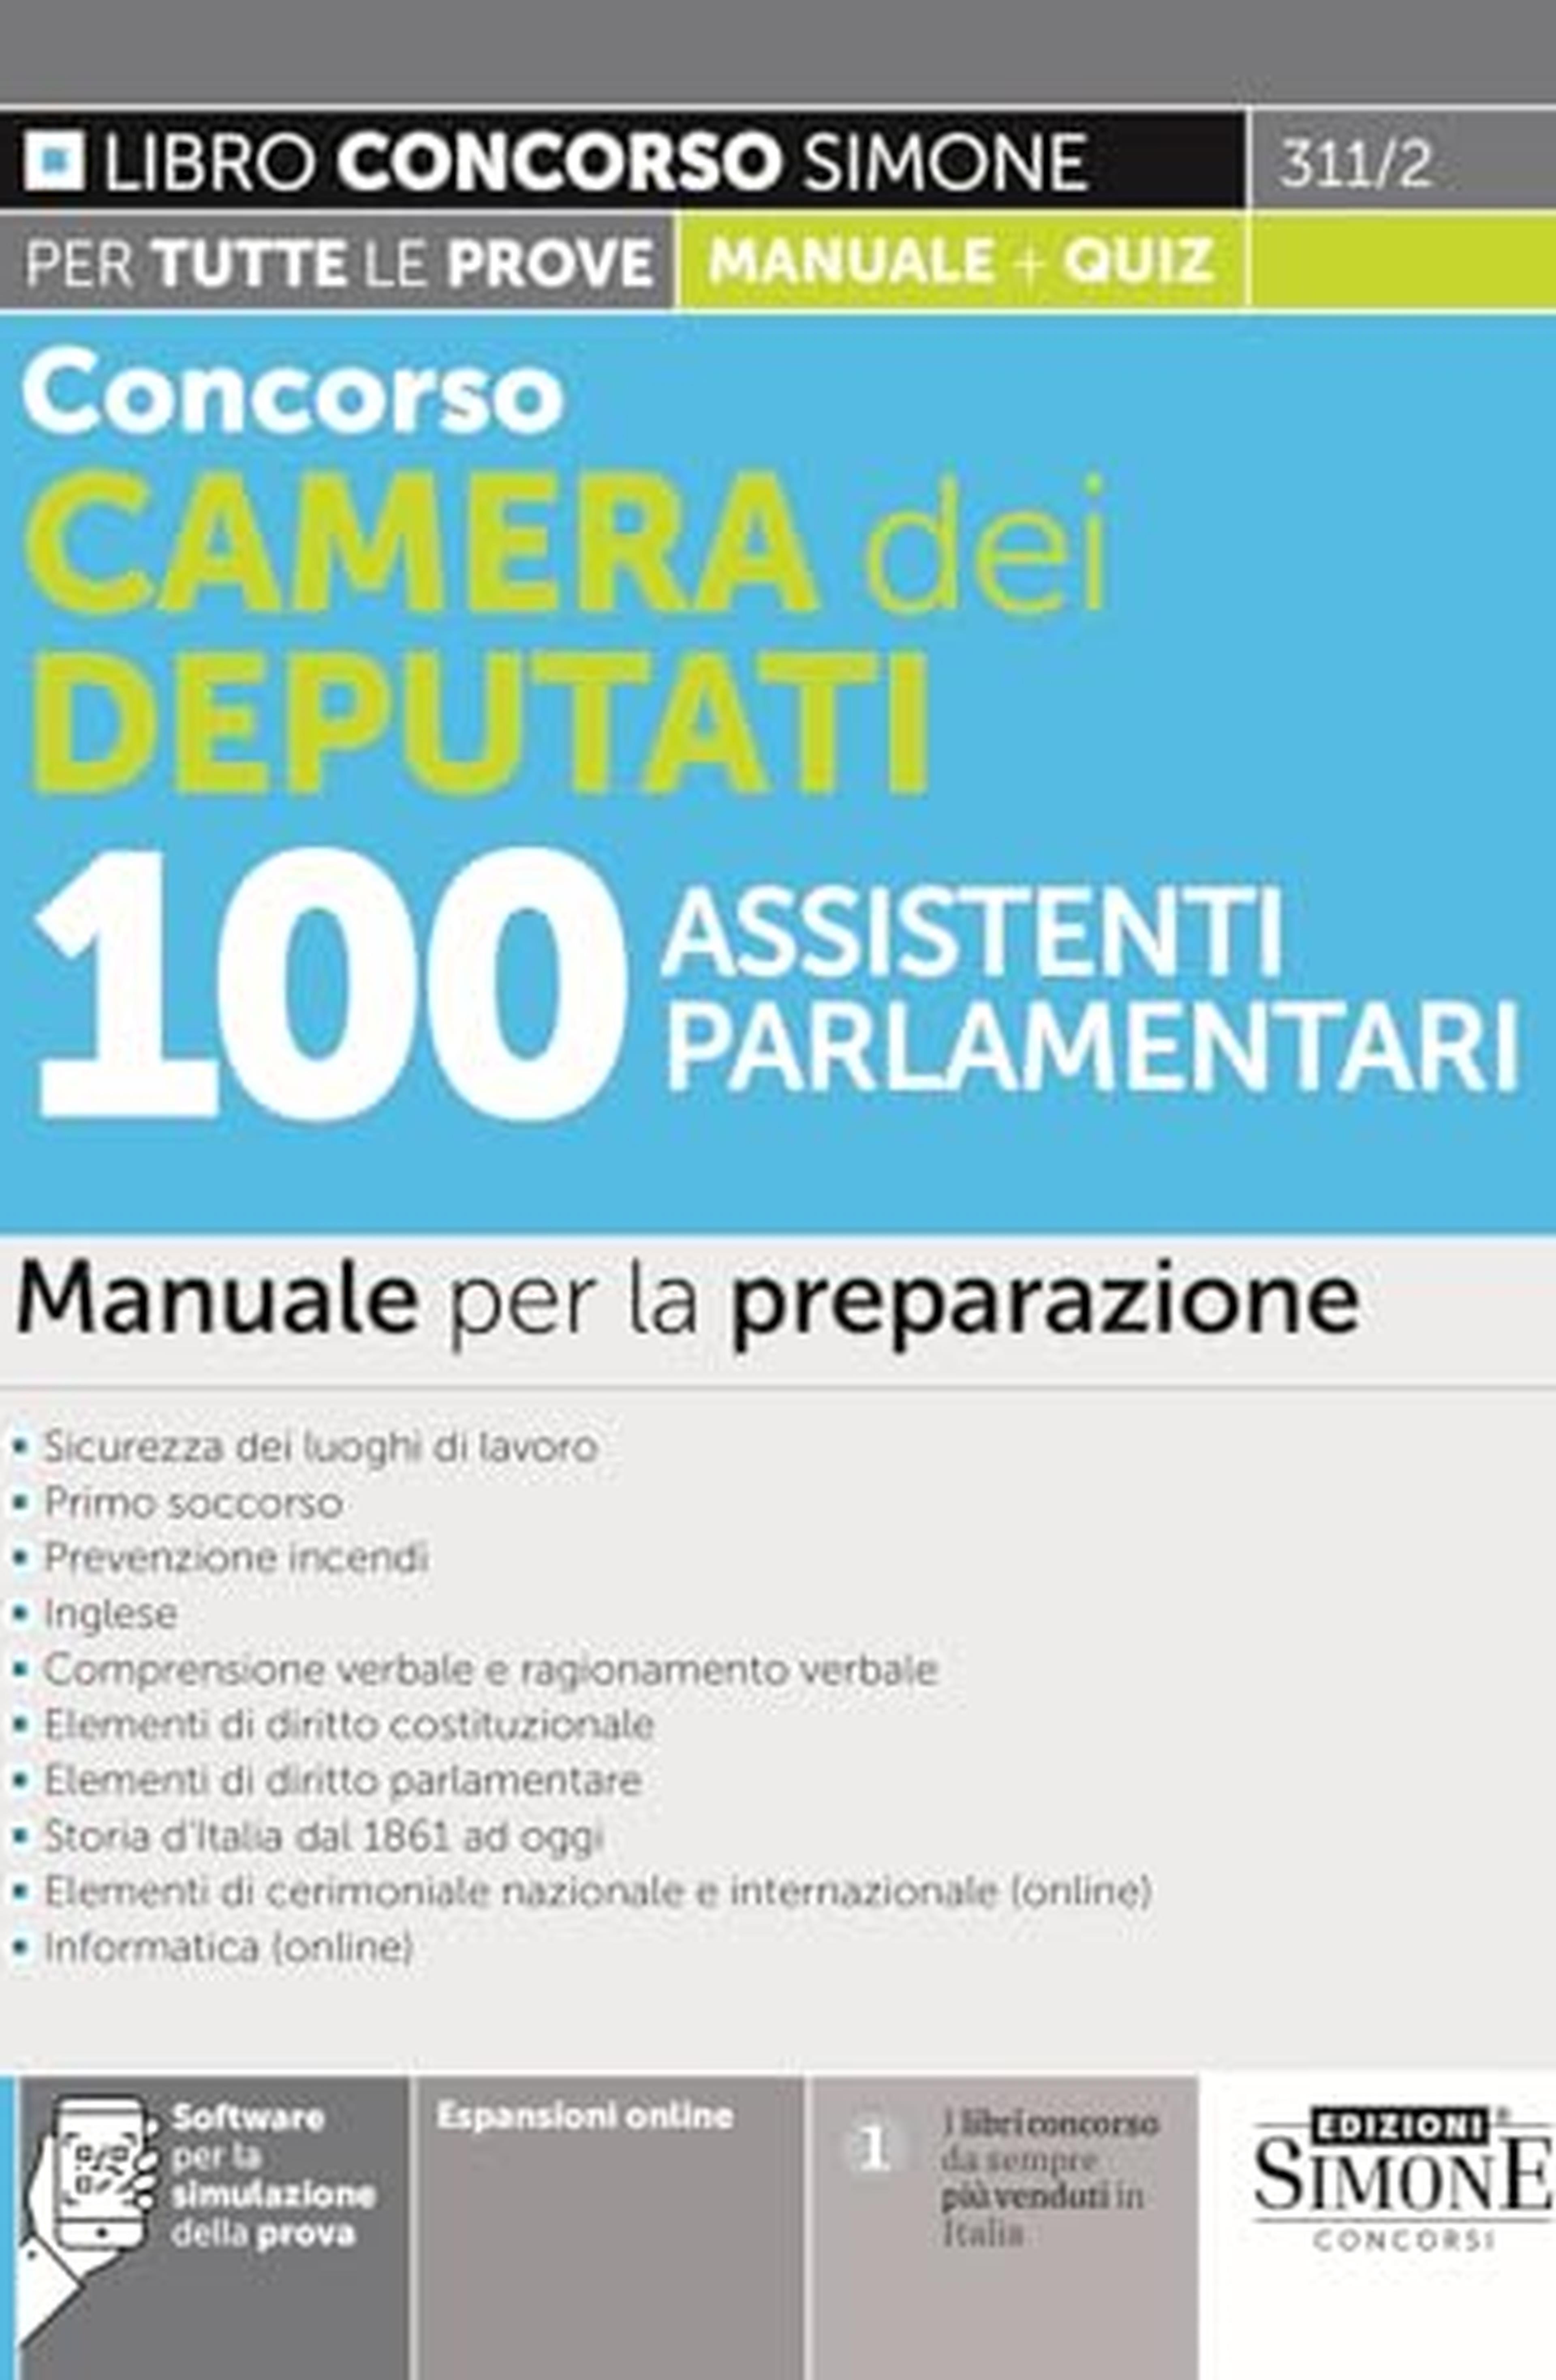 Concorso Camera dei Deputati 100 Assistenti Parlamentari - Manuale per la preparazione